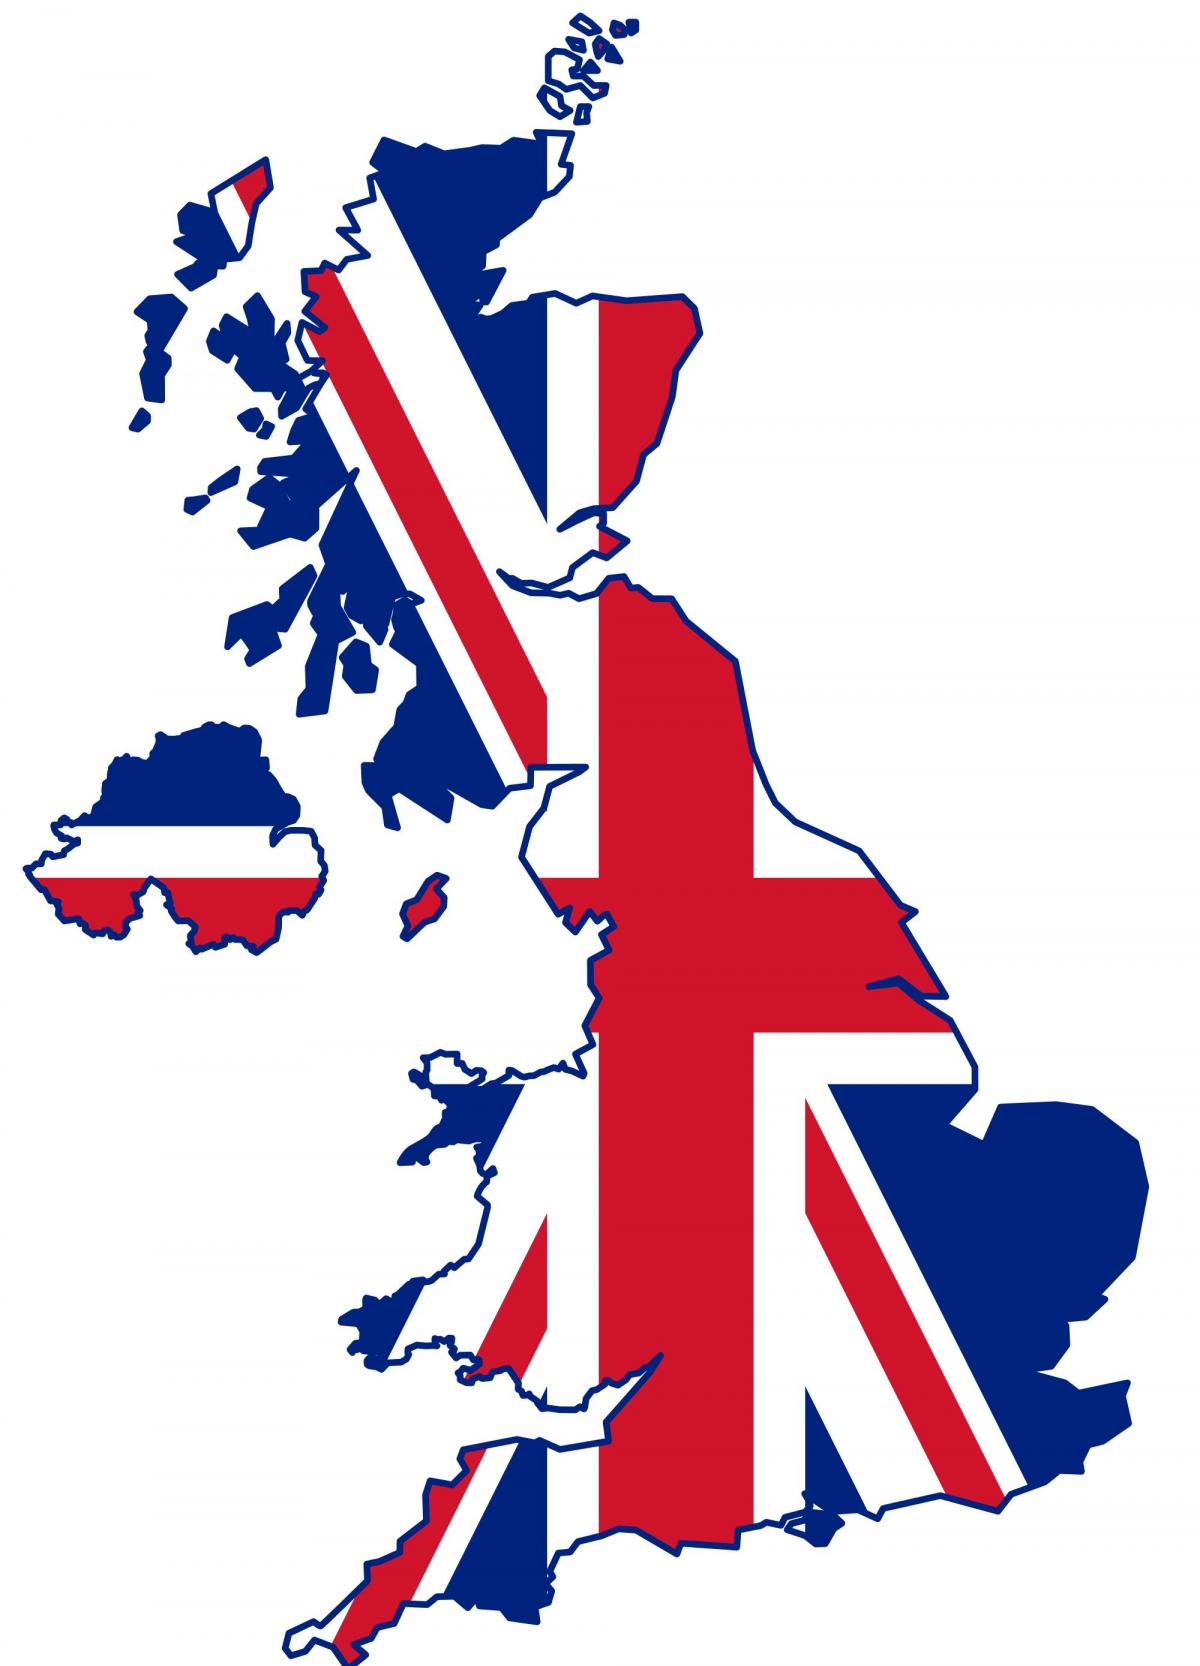 Mapa da bandeira do Reino Unido (UK)